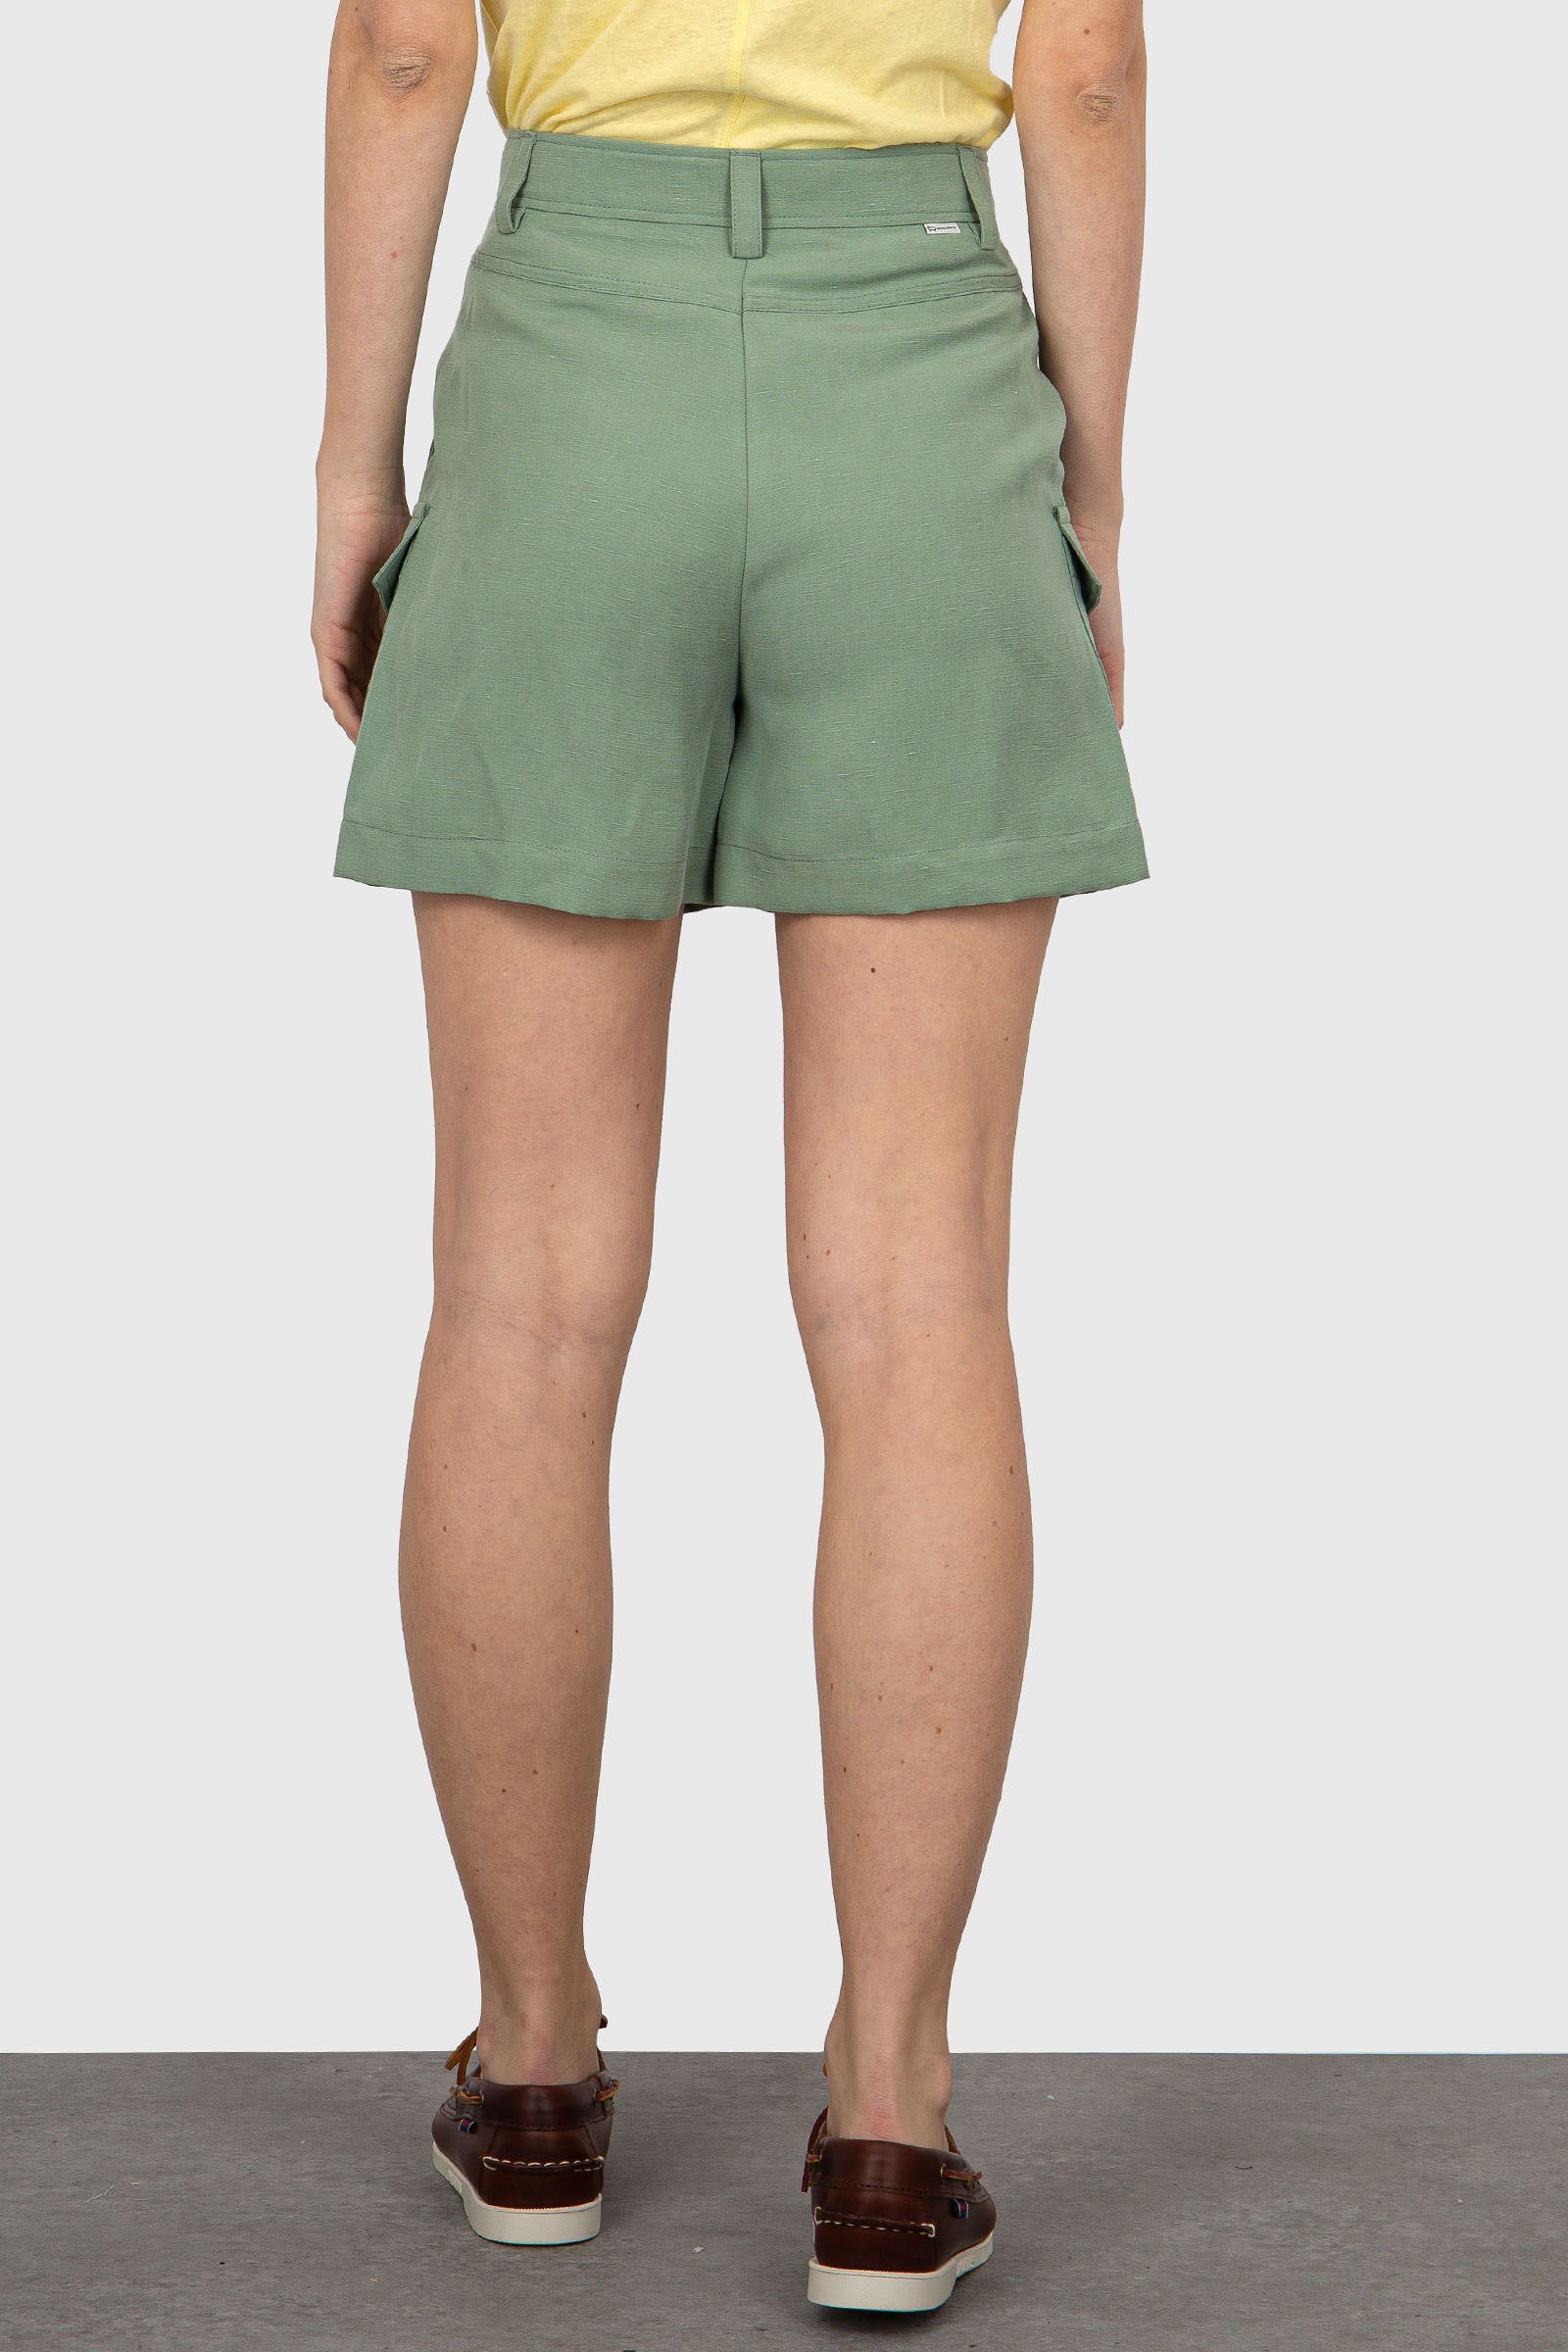 Woolrich Mint Green Linen/Viscose Shorts - 5